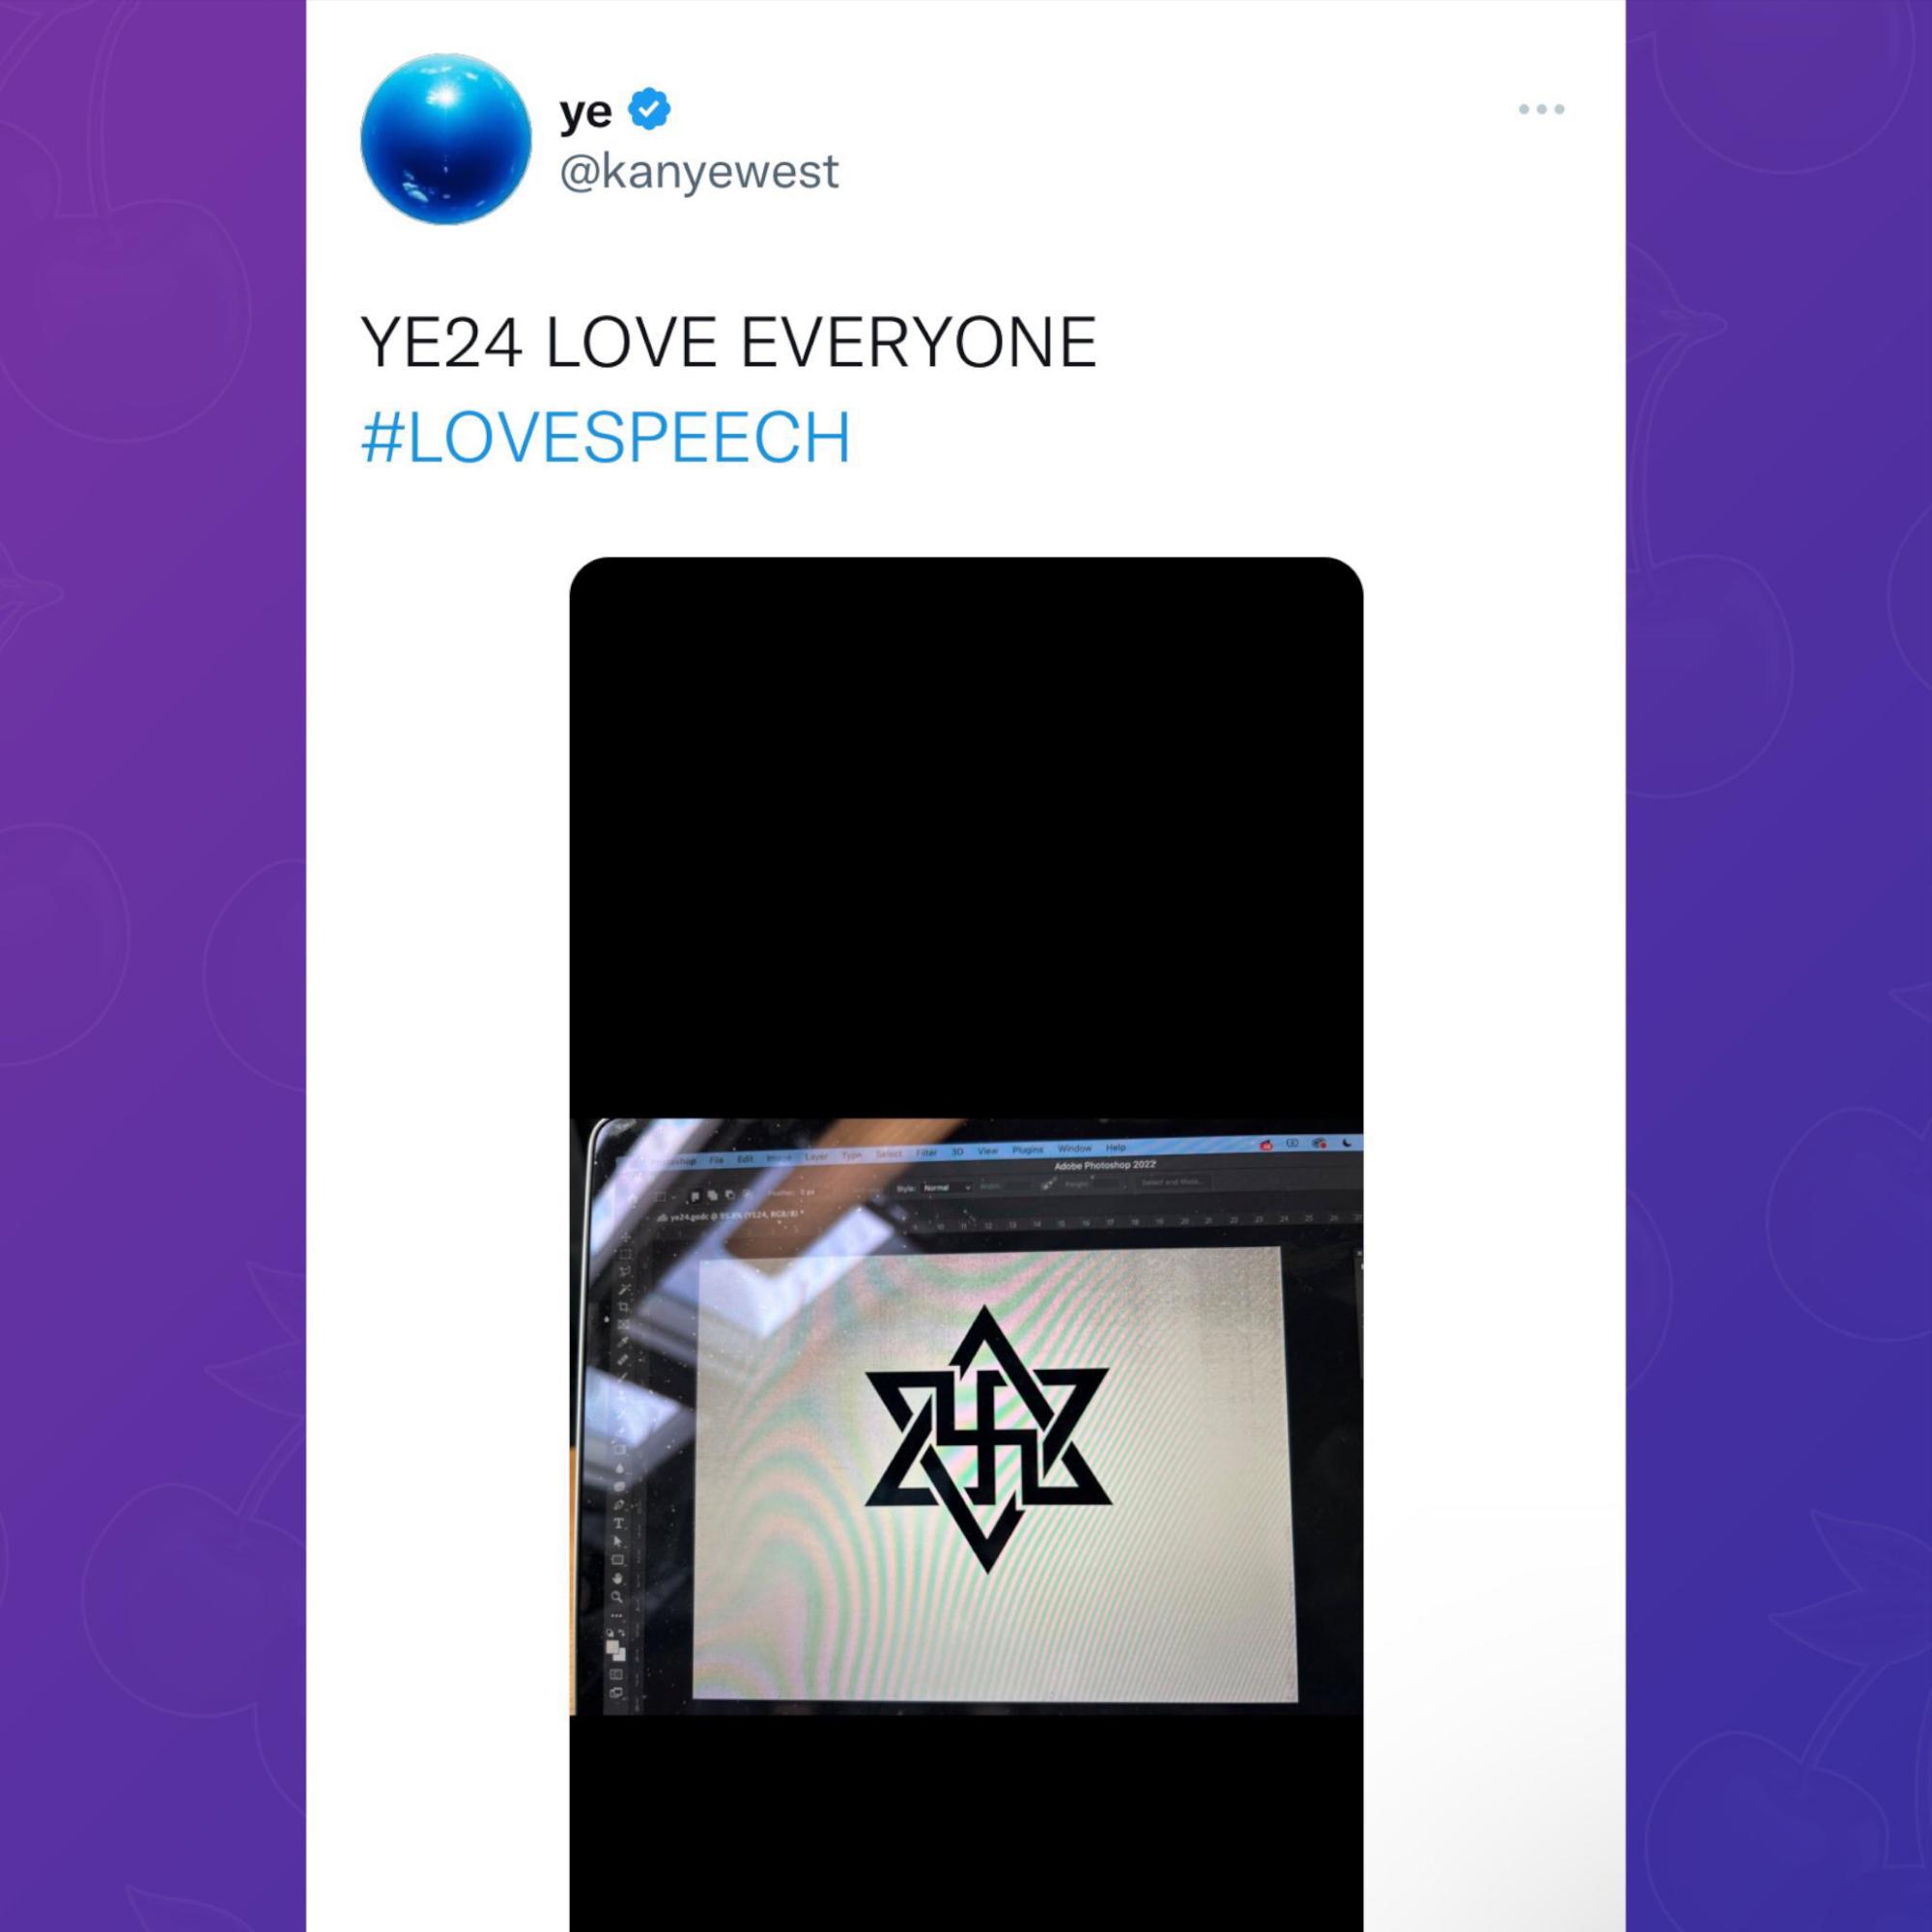 $!Suspenden cuenta de Twitter de Kanye West tras publicar esvástica